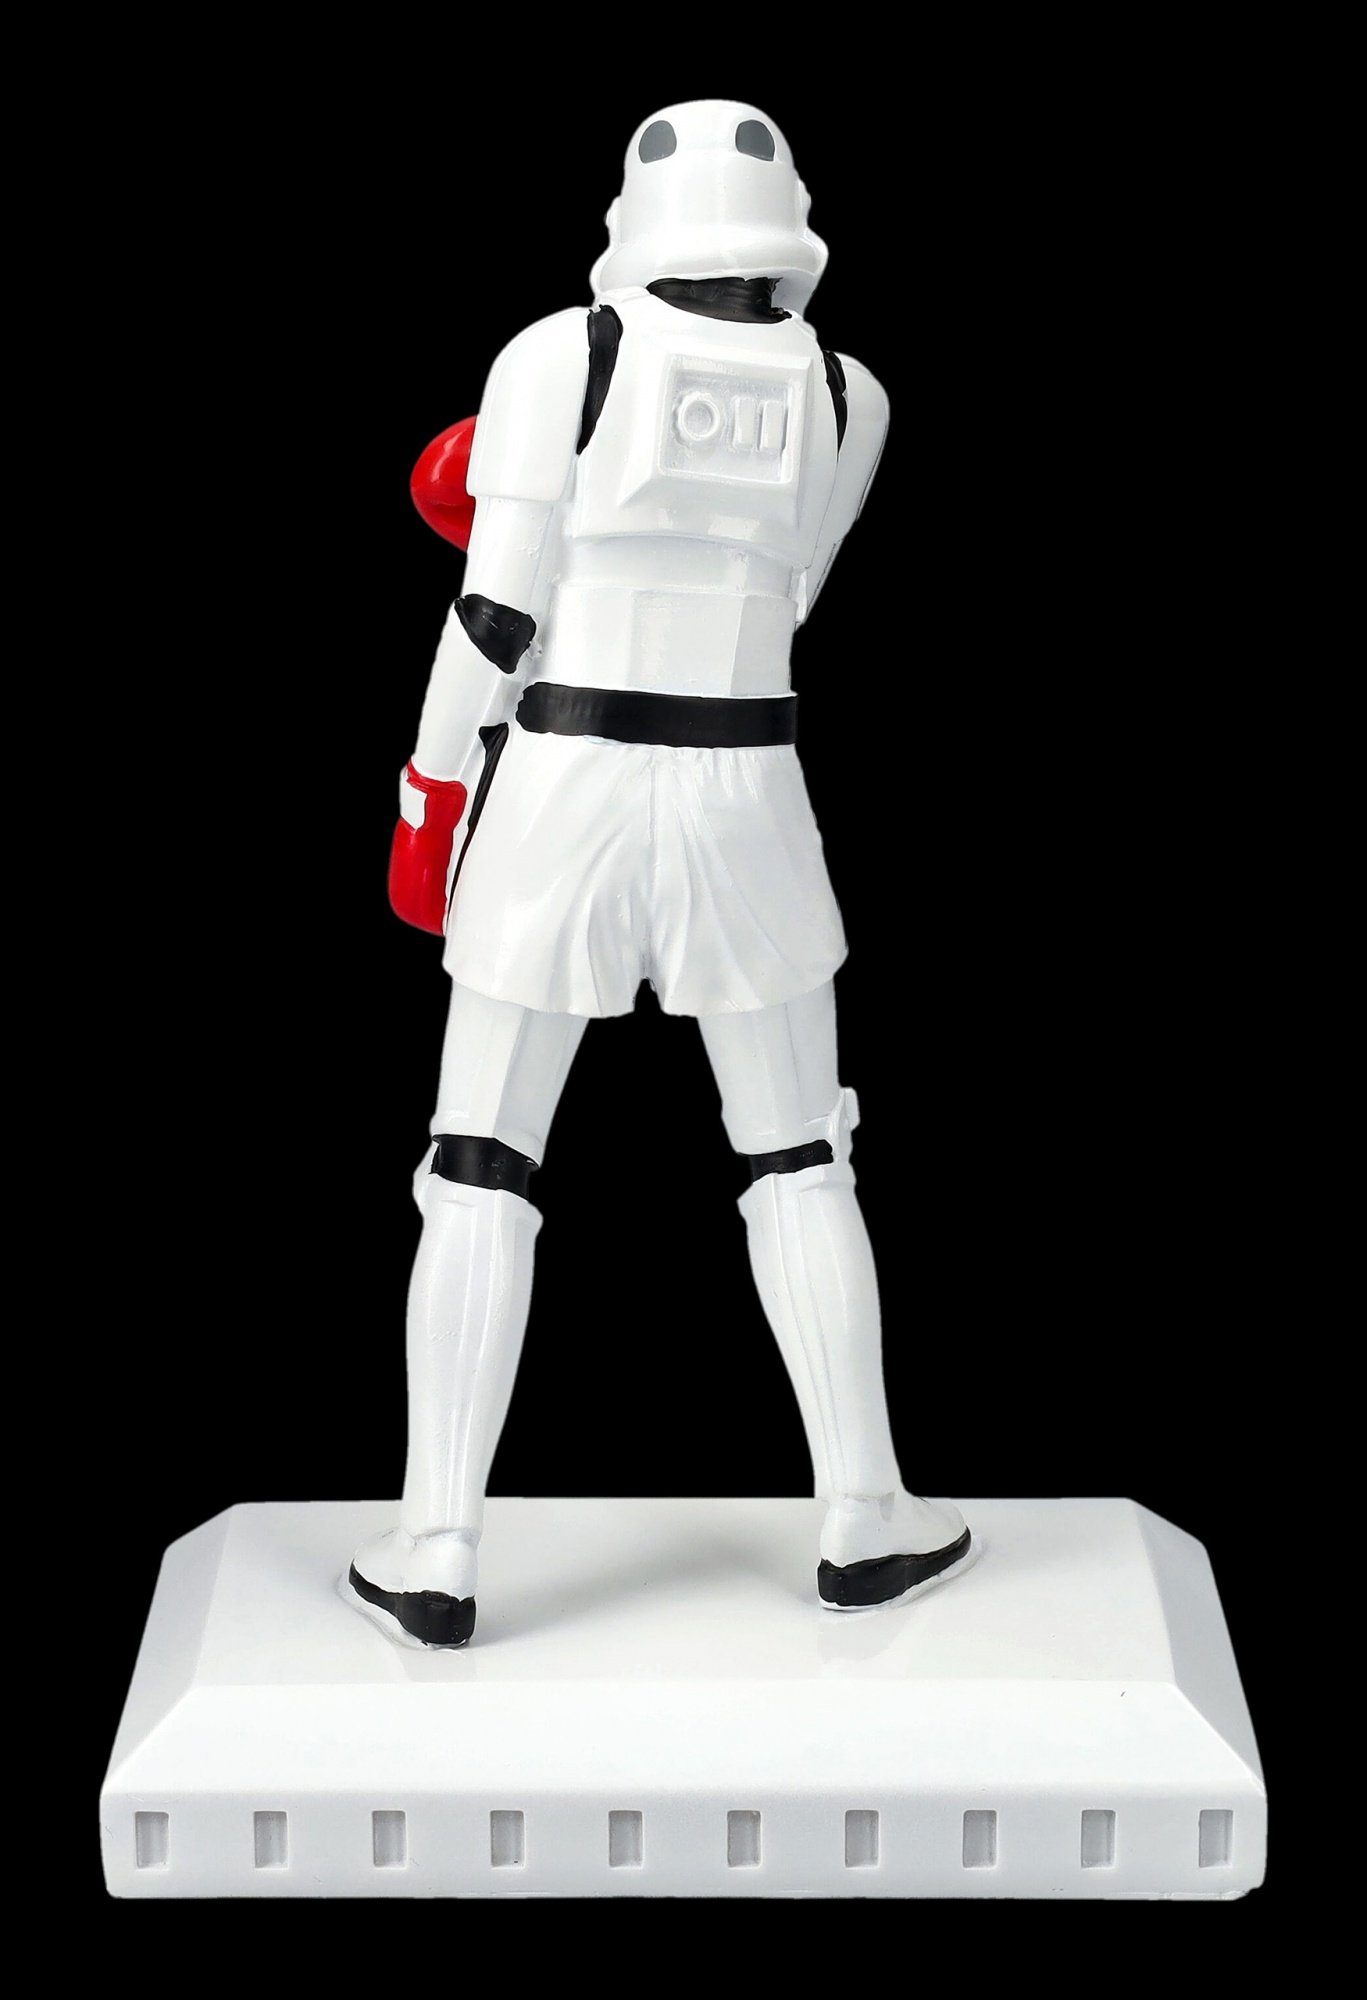 Dekofigur - Sci-Fi The Merchandise Figuren Greatest - Figur Shop GmbH Boxer Stormtrooper Dekofigur